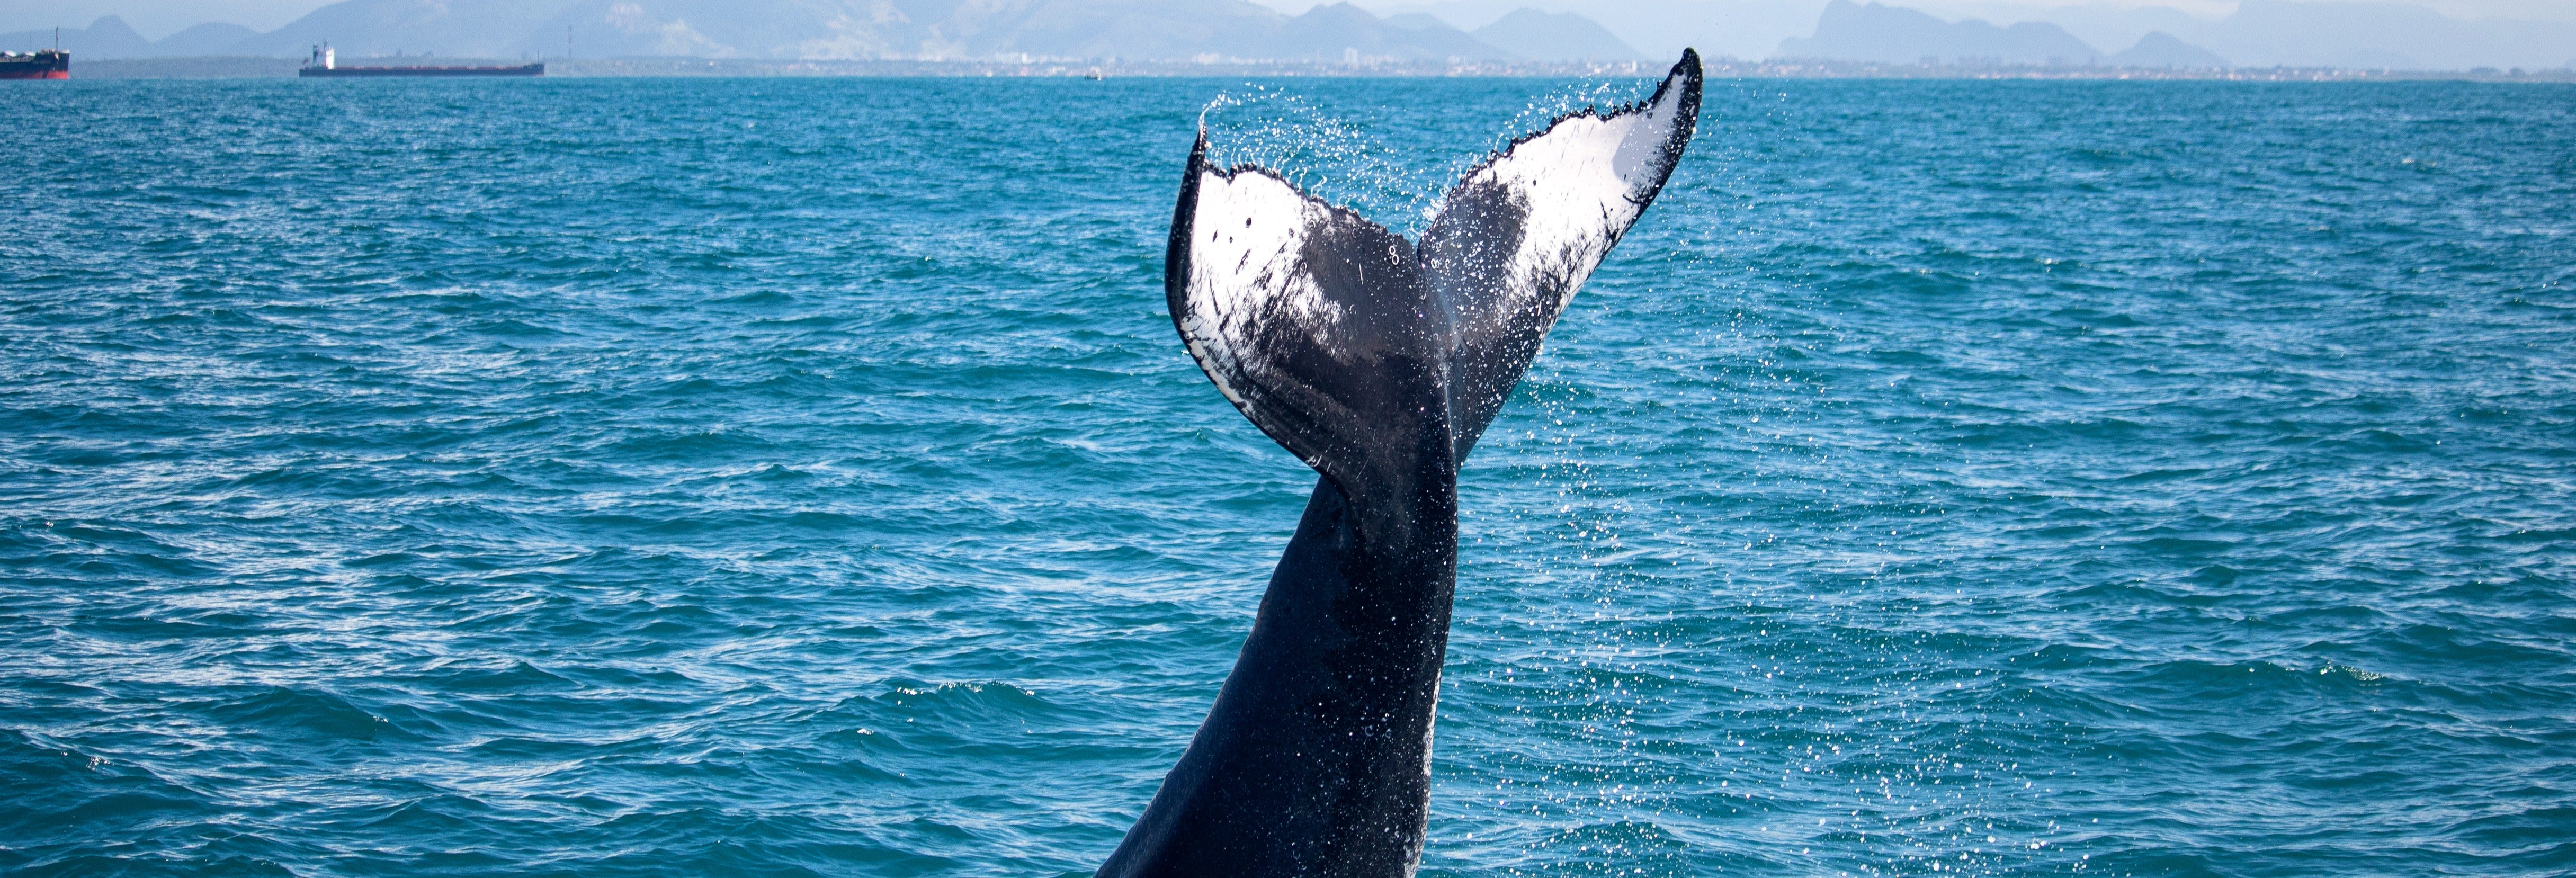 Avistamento de baleias de lancha rápida